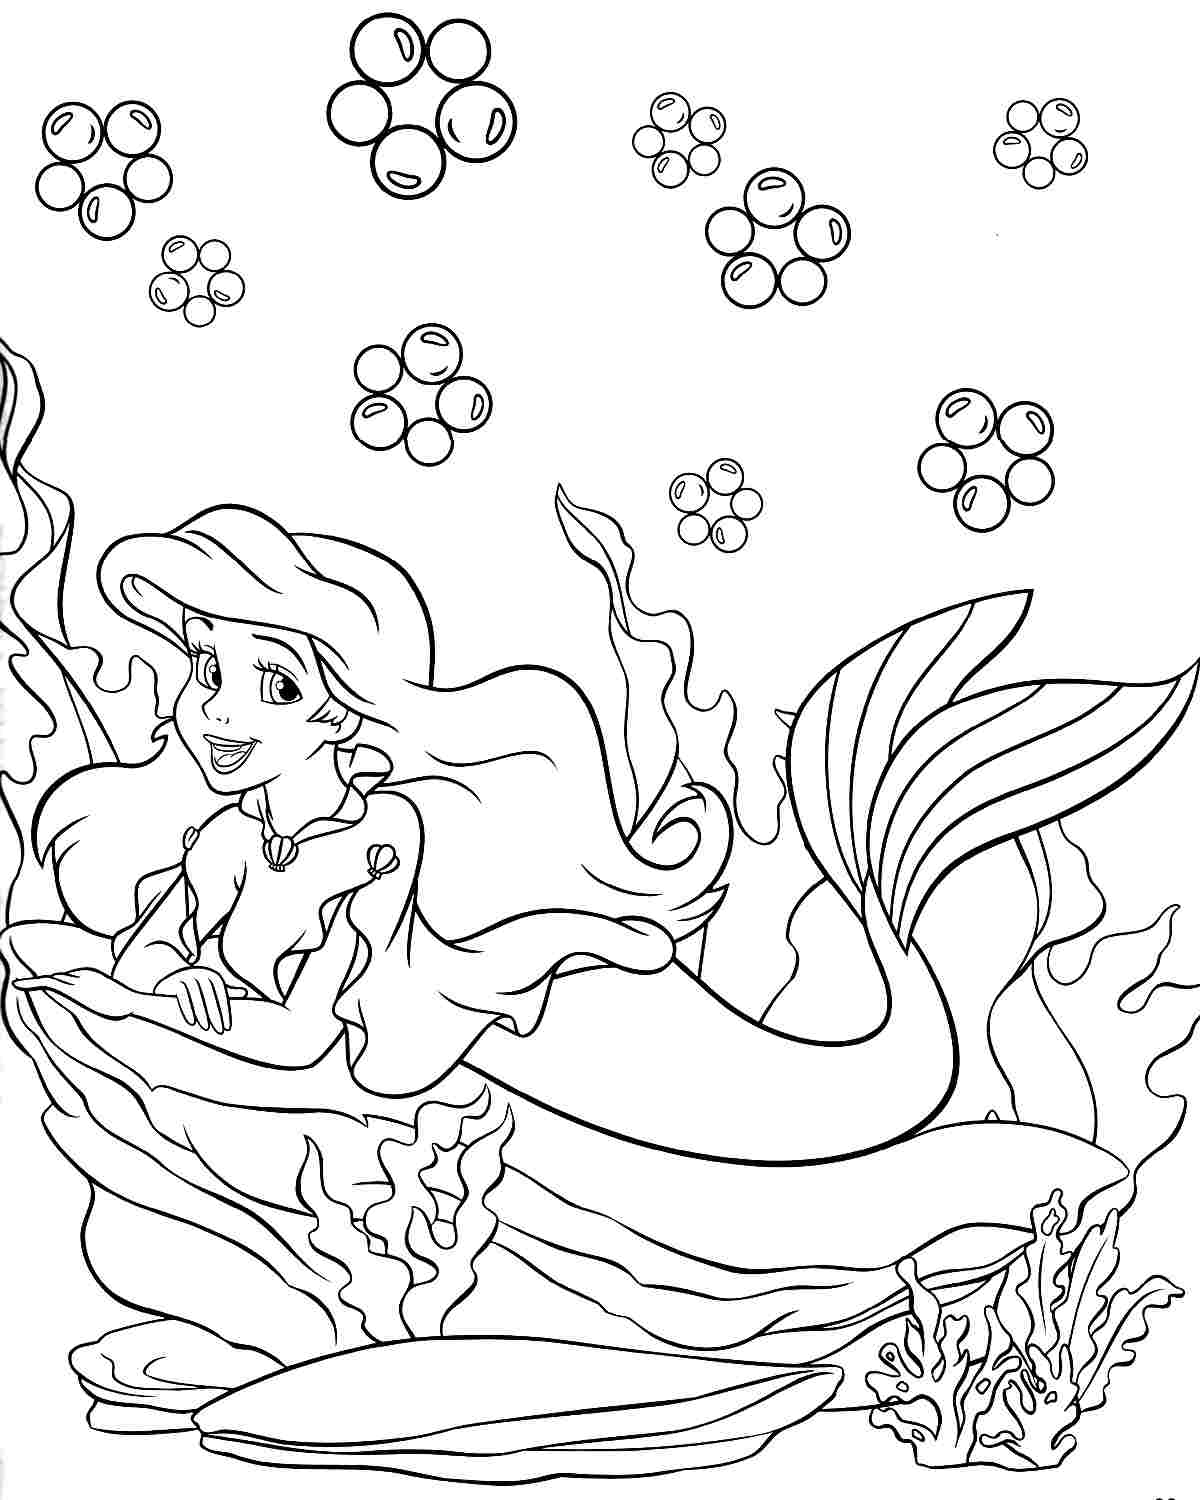 Dibujos Para Colorear De La Sirenita Ariel Y Sus Amigos Porn Sex Picture